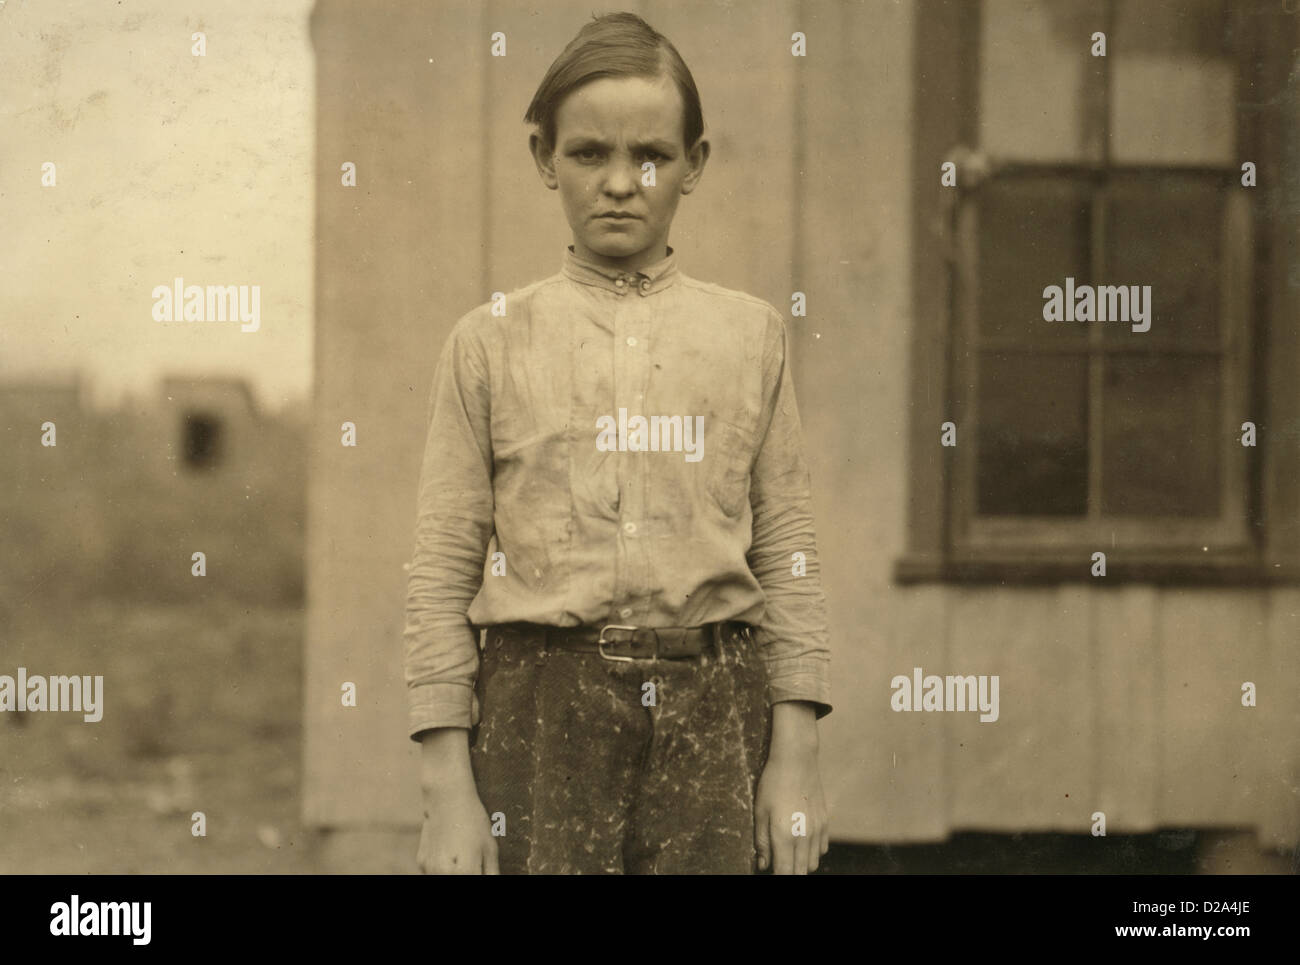 Charlie Lott desprendedor de 13 años en Cotton Mill Oeste registro de su familia dice que nació el 12 de marzo de 1900 ha estado trabajando para el año Foto de stock